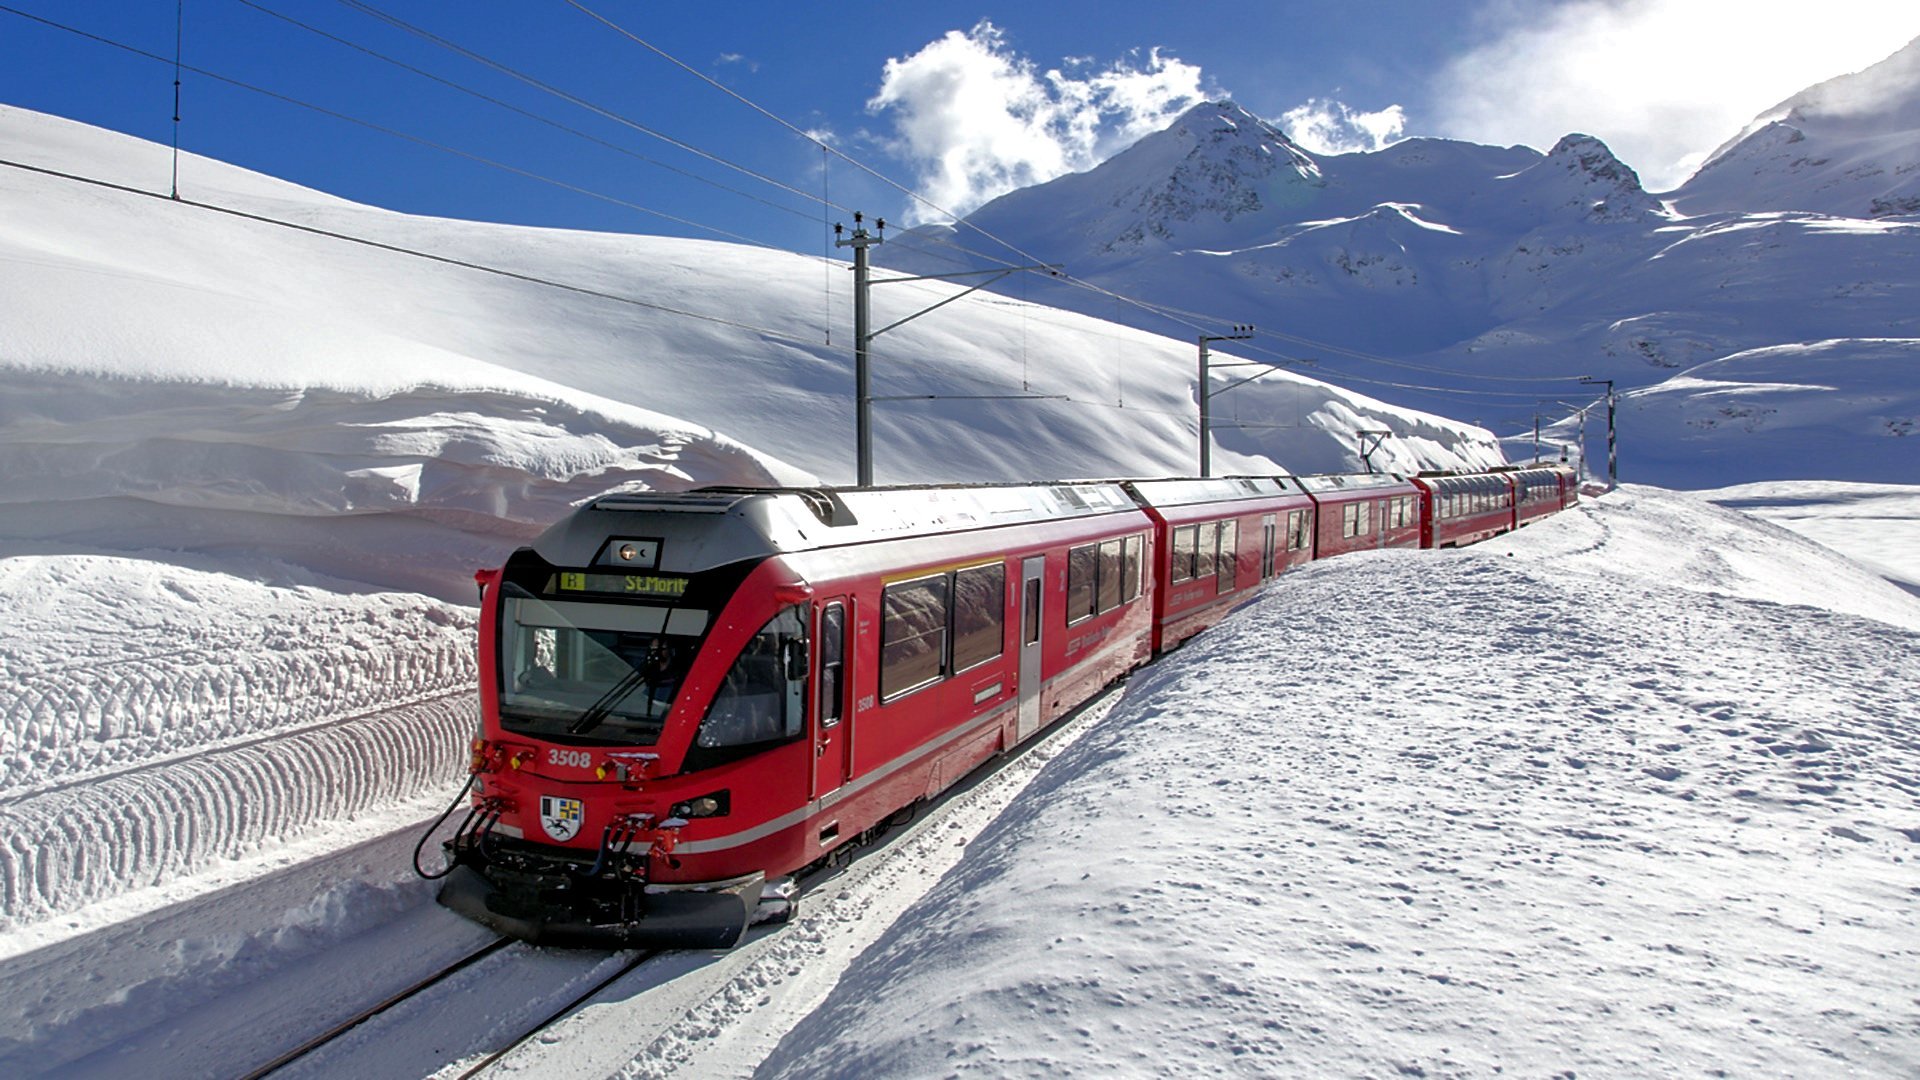 Best Train Wallpaper Id - Switzerland Images Full Hd - HD Wallpaper 